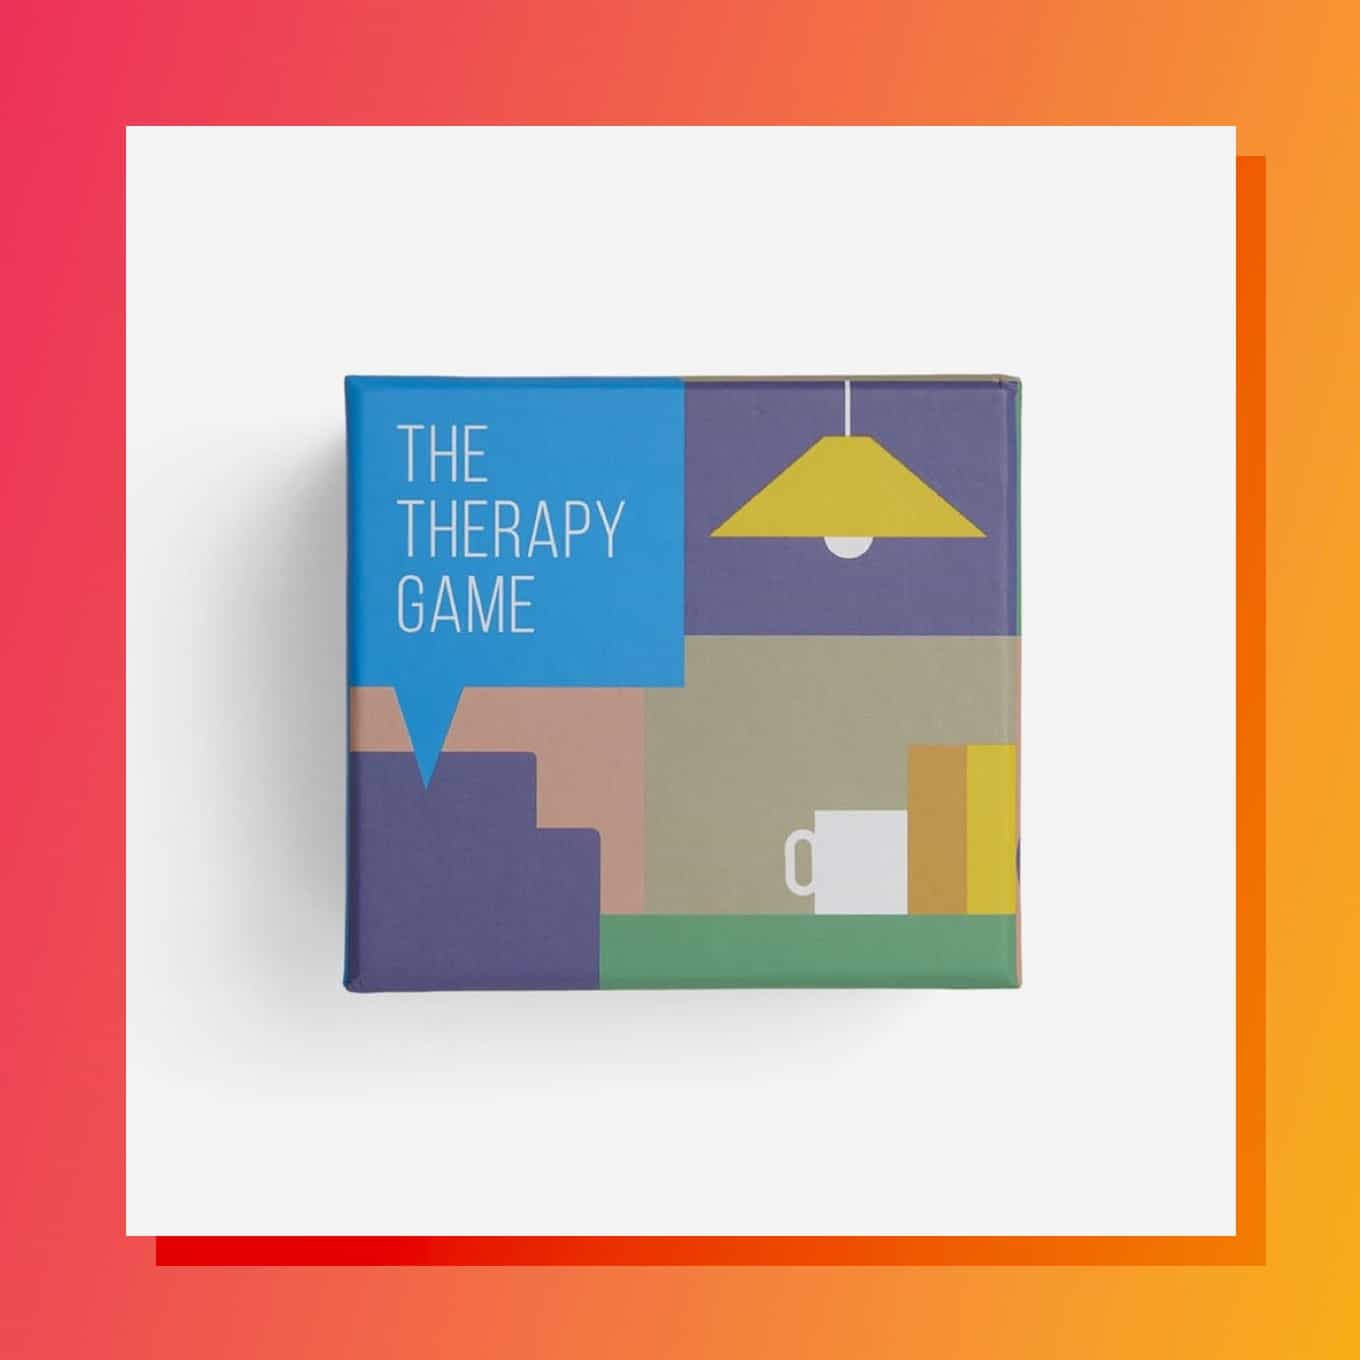 Moderne, minimalistische vierkante doos met de tekst The Therapy Game